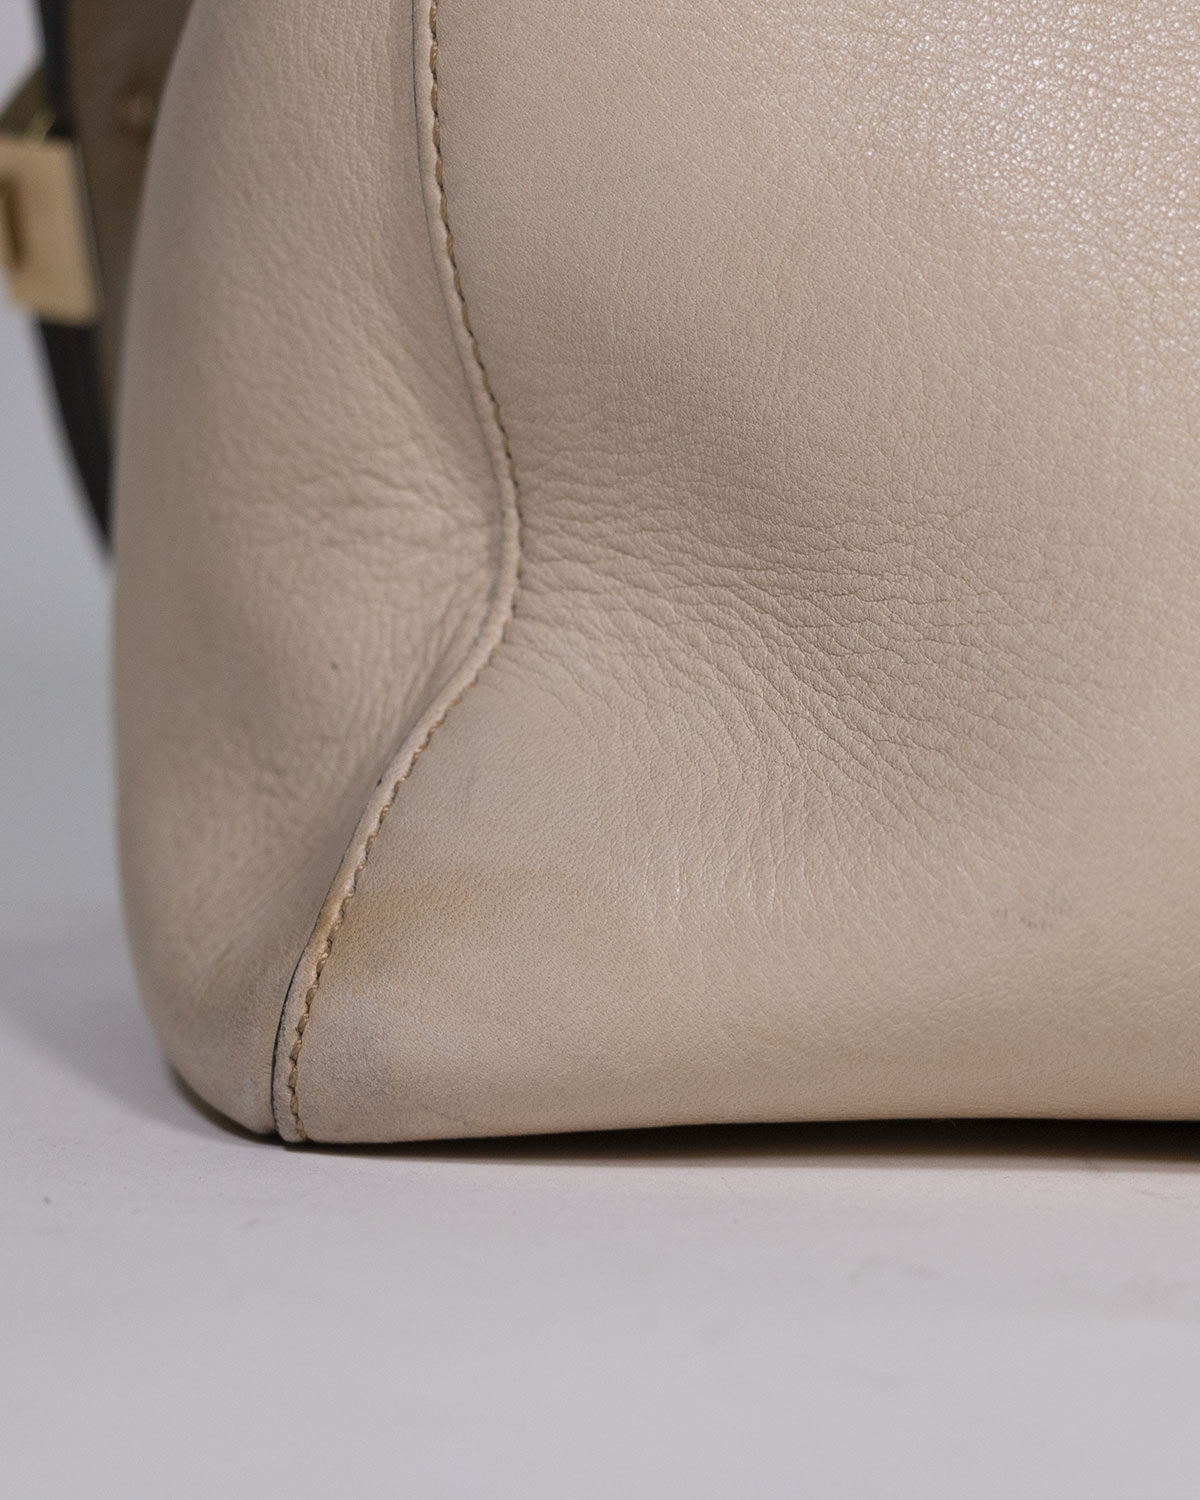 Givenchy - Antigona bag